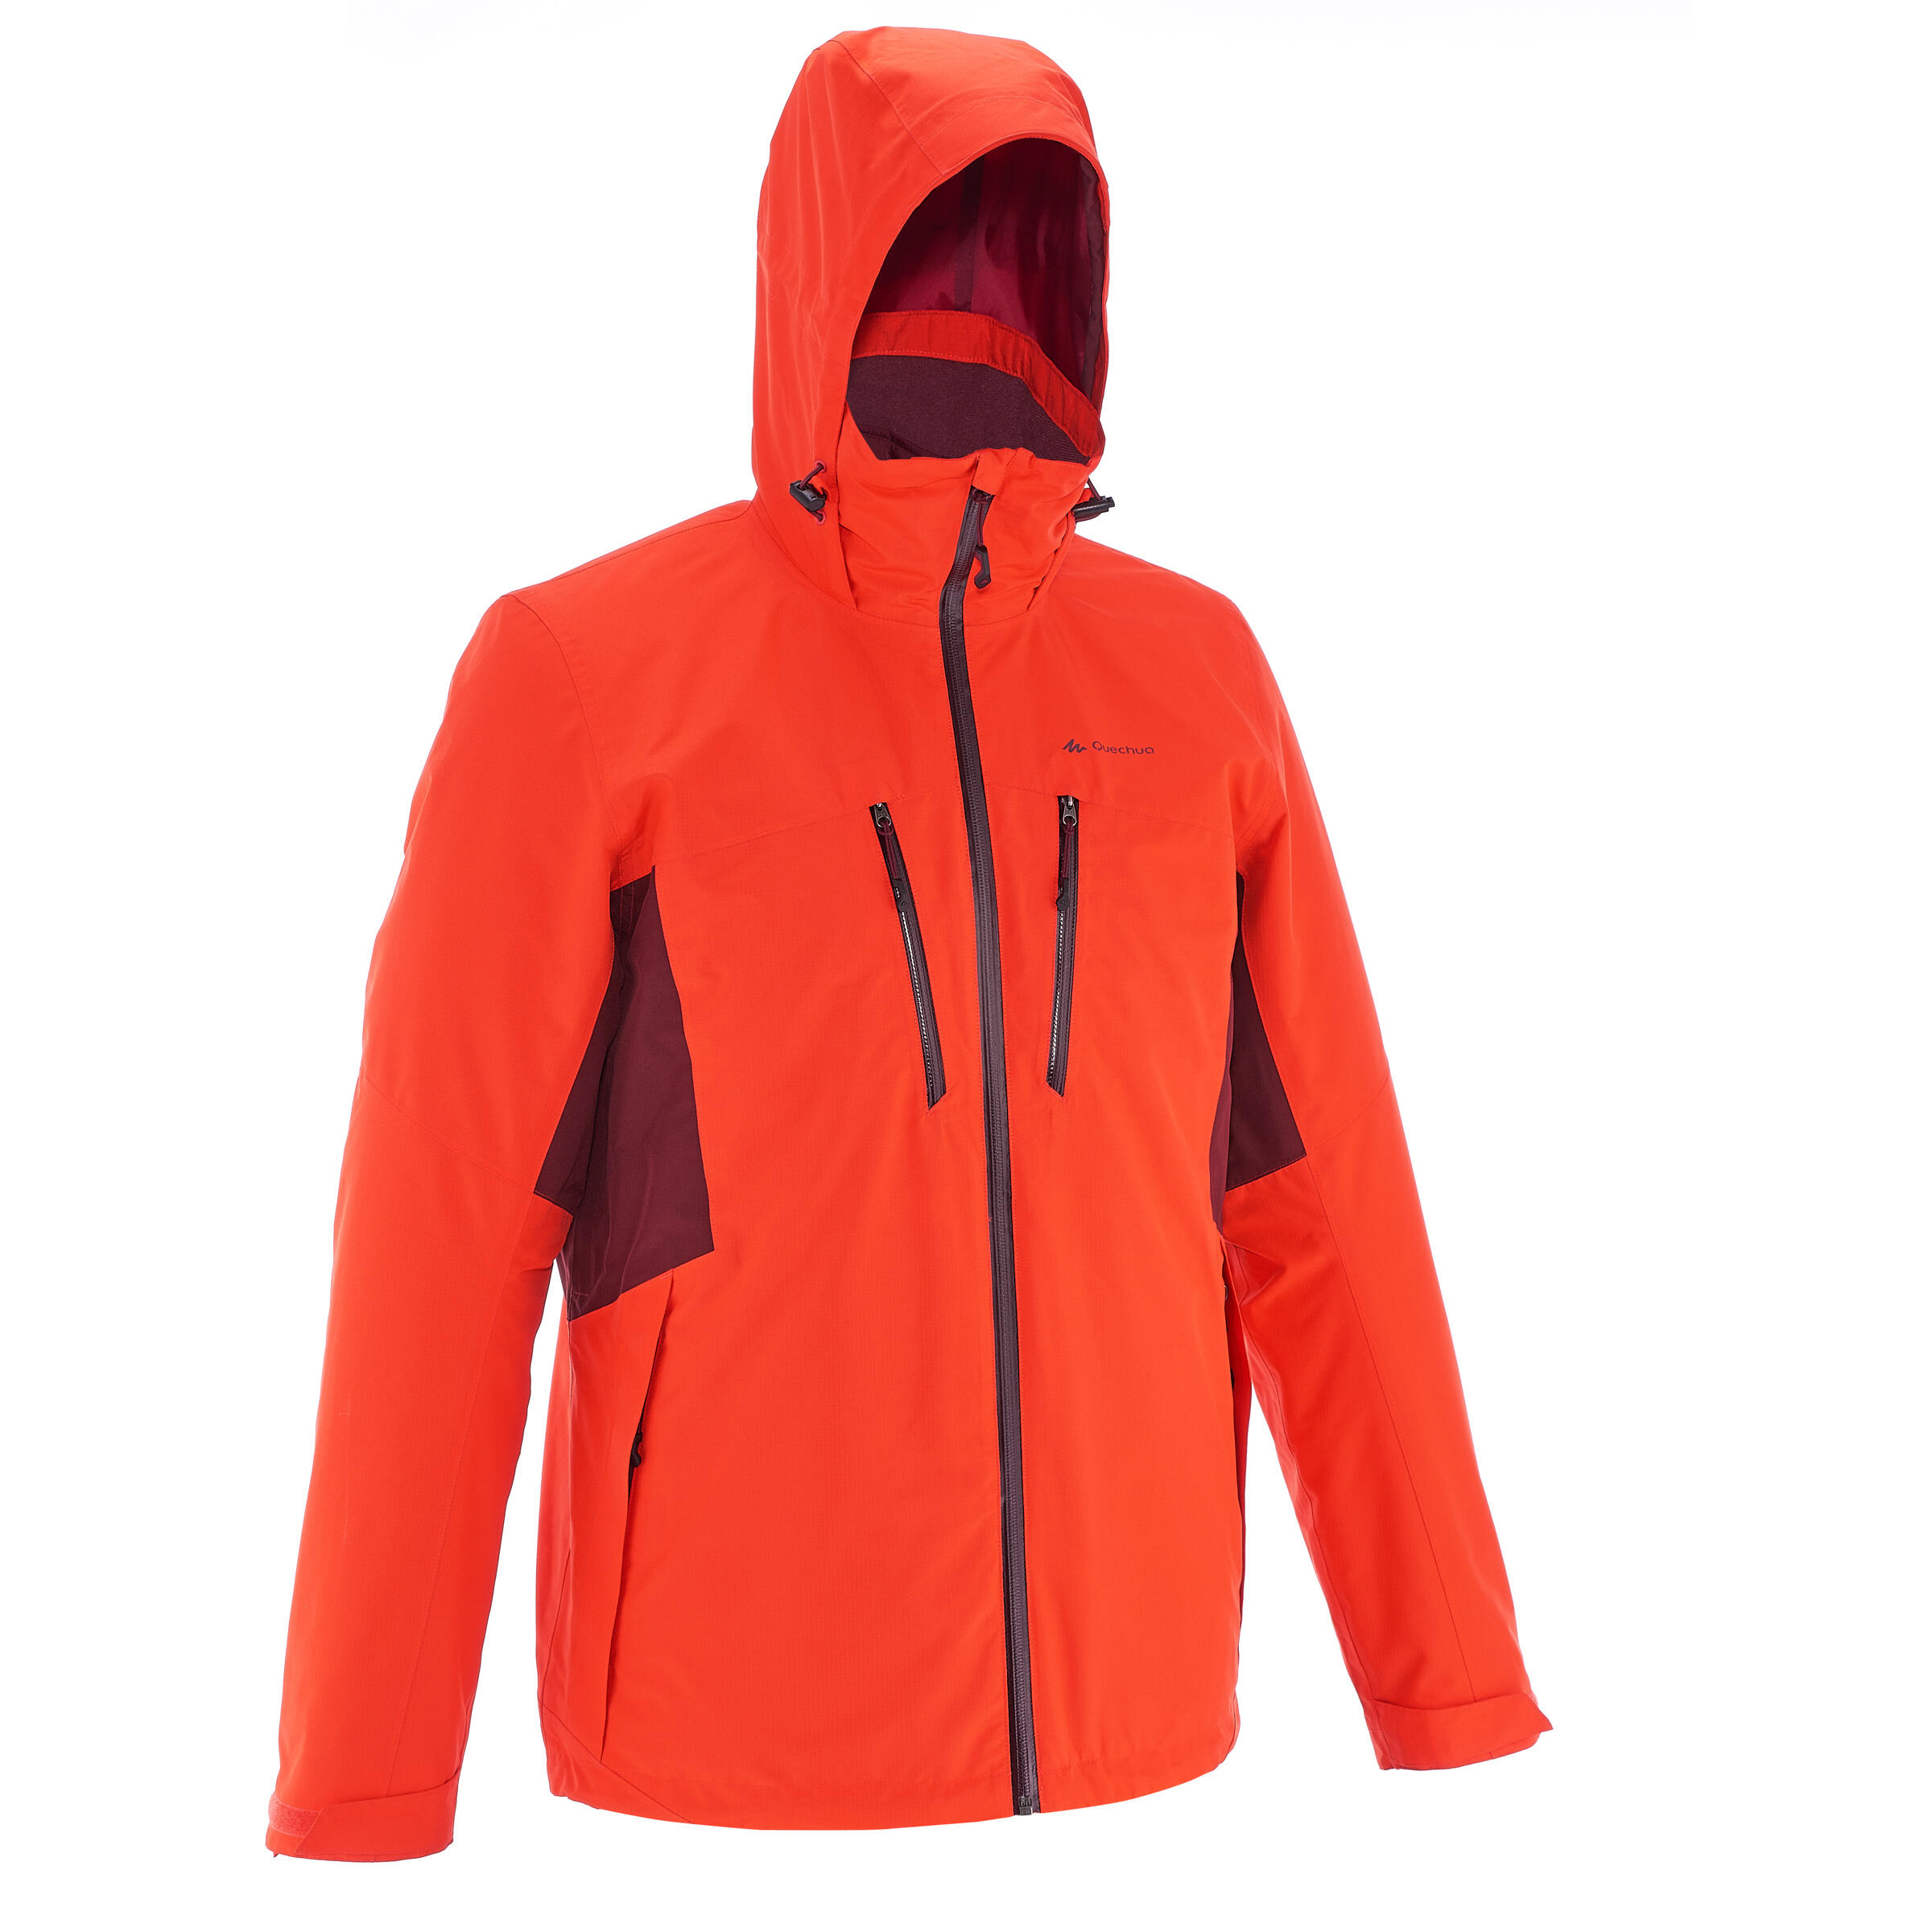 Rainwarm 500 3-in-1 Men's Trekking Jacket - Red 2/17